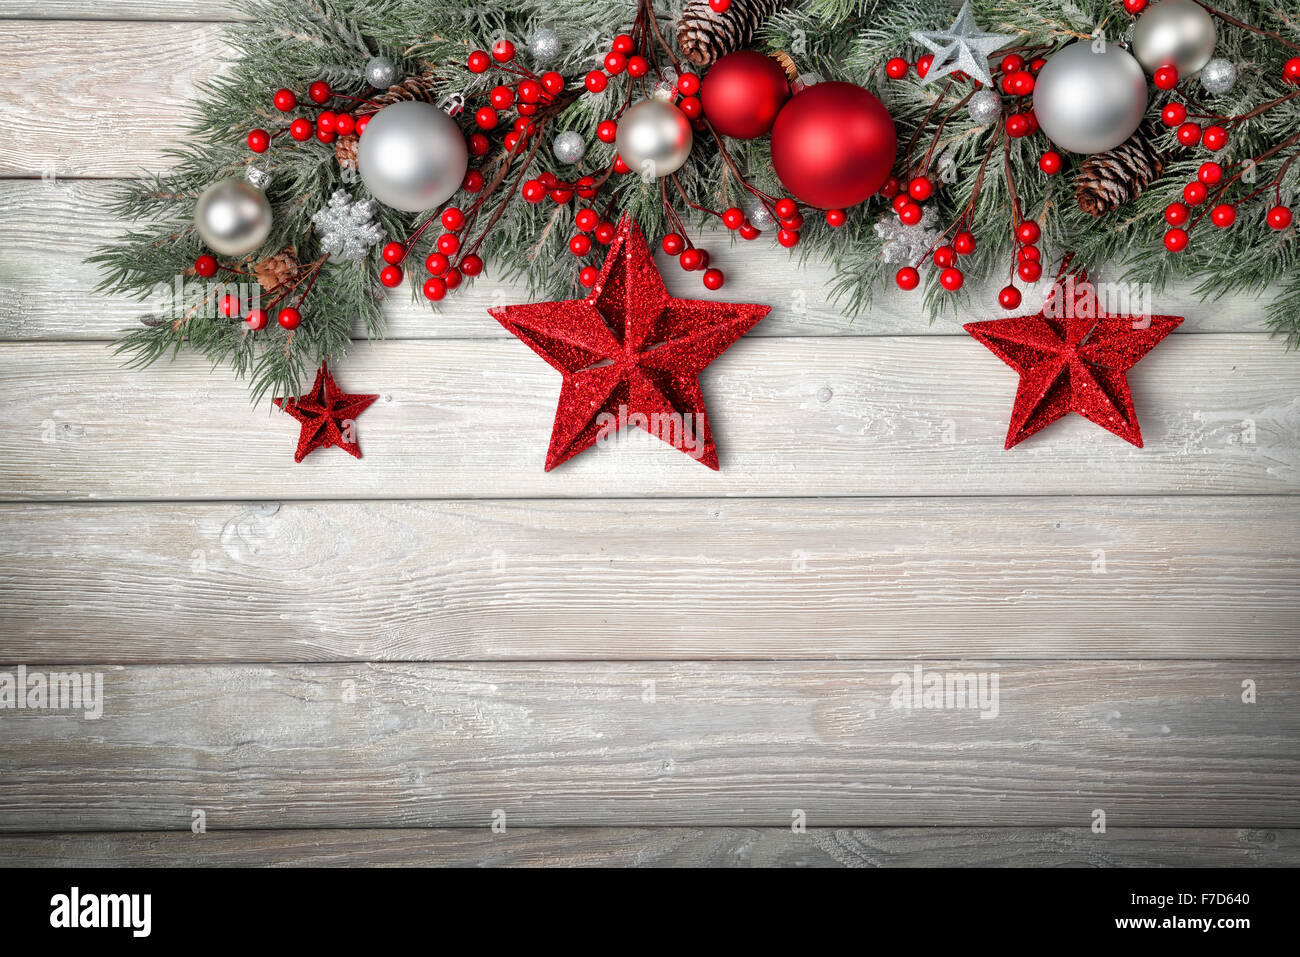 Weihnachten Hintergrund mit grau Holz Board und Tannen Ästen verziert mit roten und silbernen Kugeln und Sterne - modern, einfach eine Stockfoto